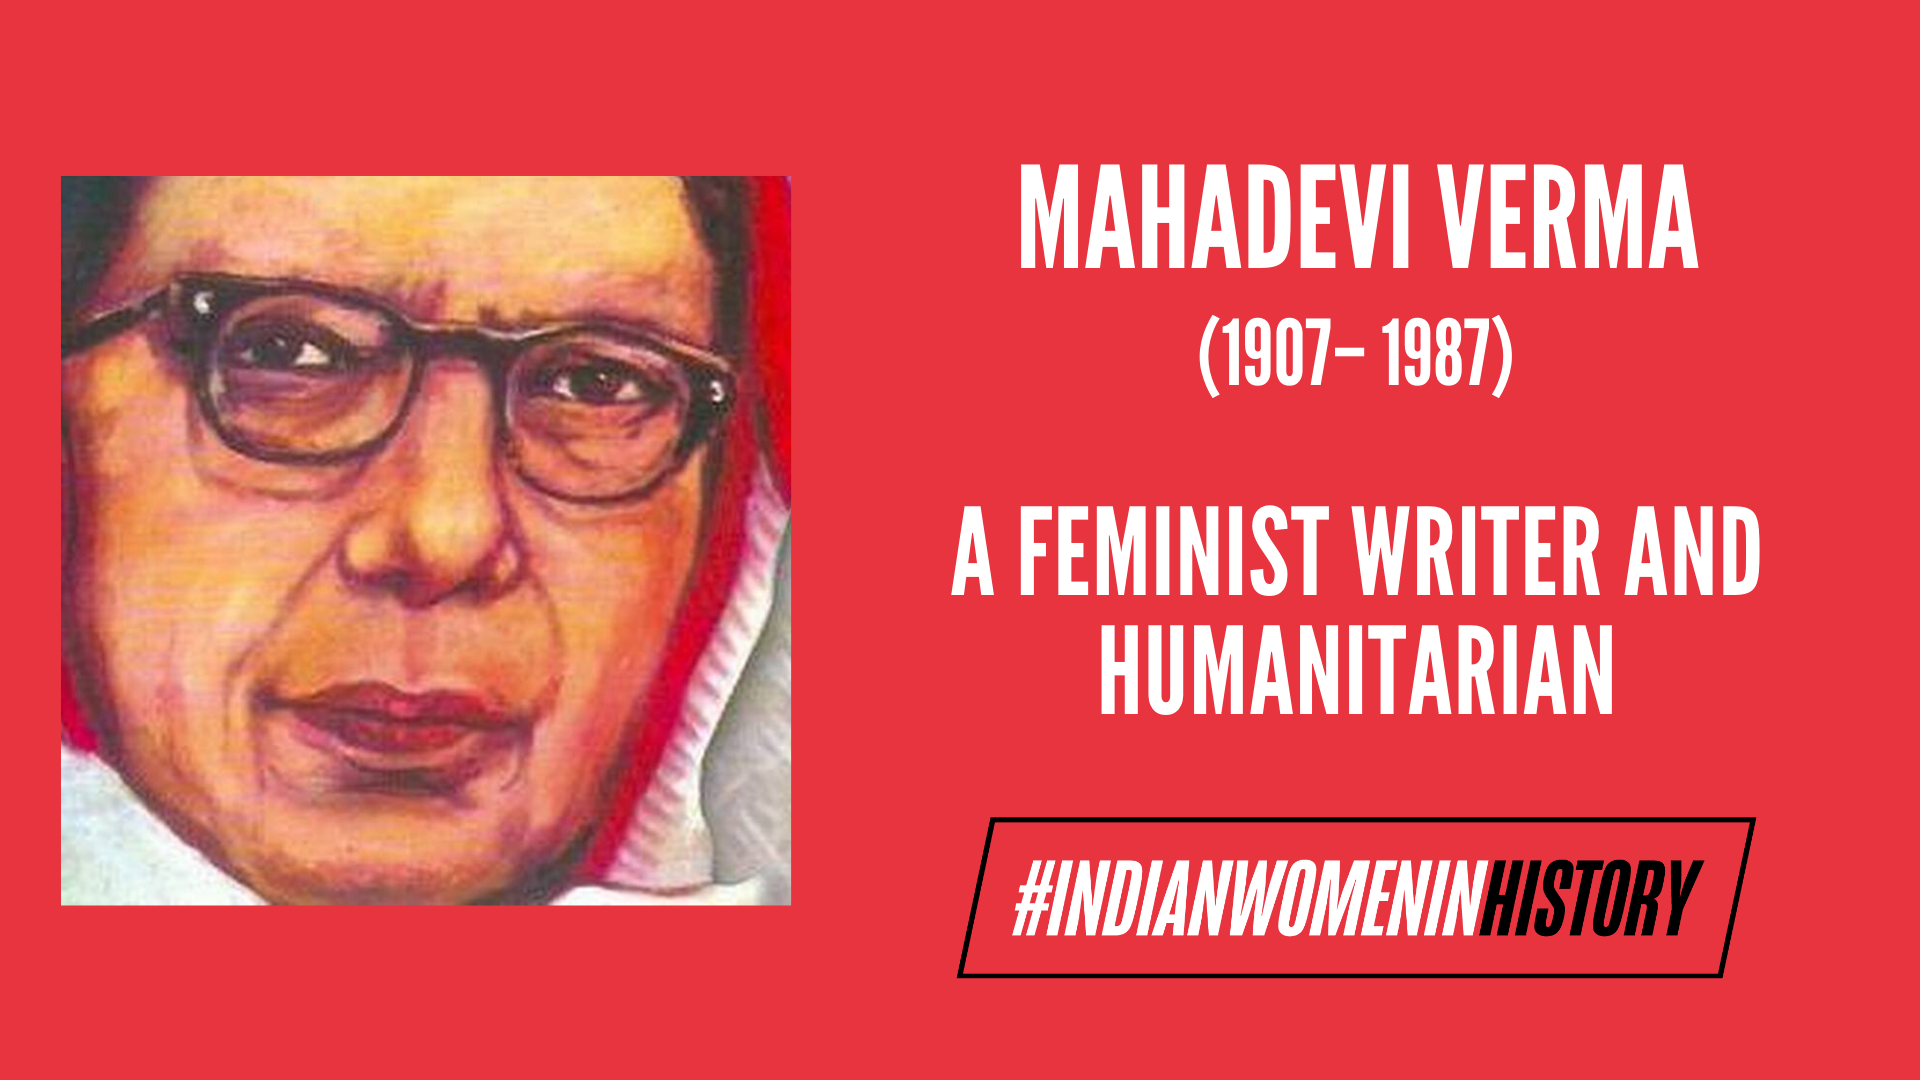 1920px x 1080px - Mahadevi Verma: A Feminist Writer And Humanitarian | #IndianWomenInHistory